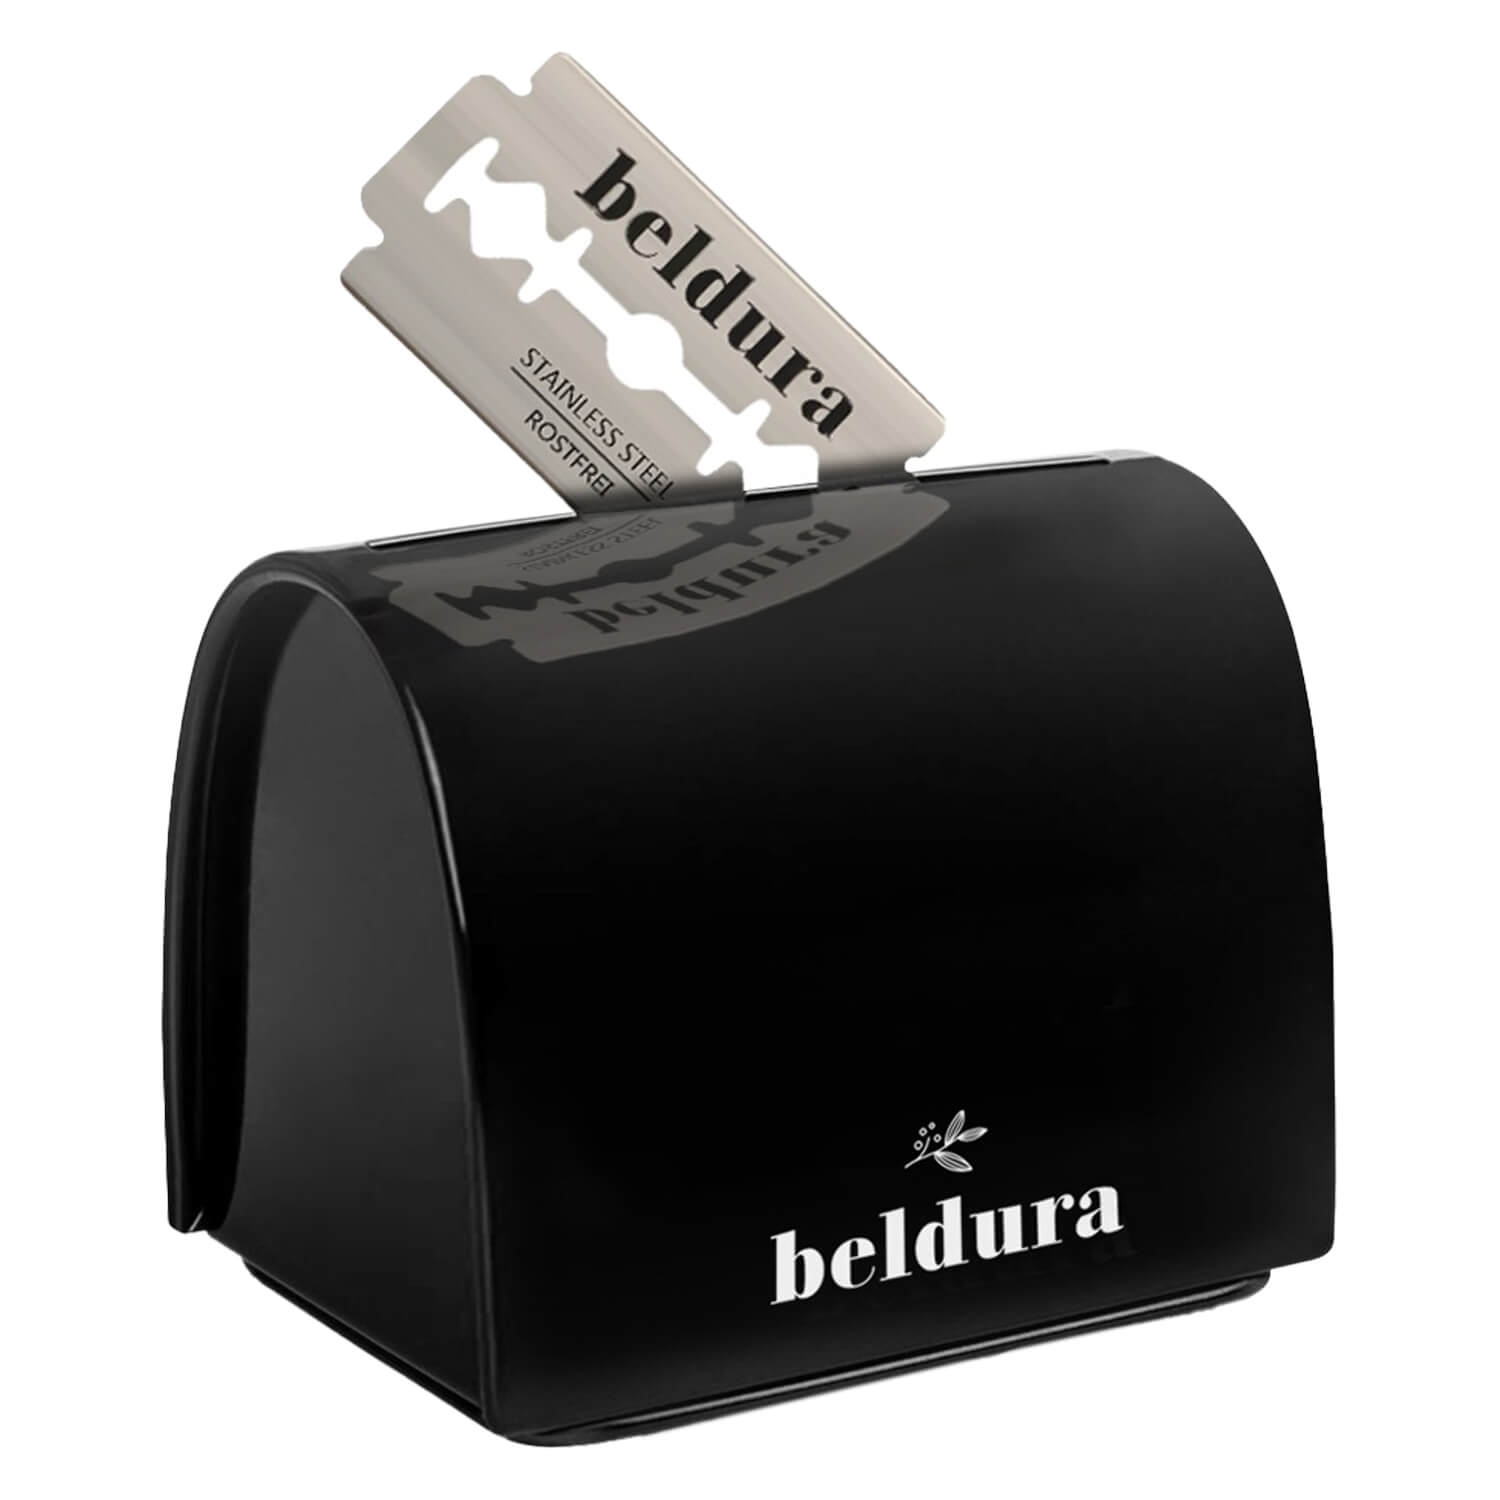 Produktbild von Beldura - Klingenbox